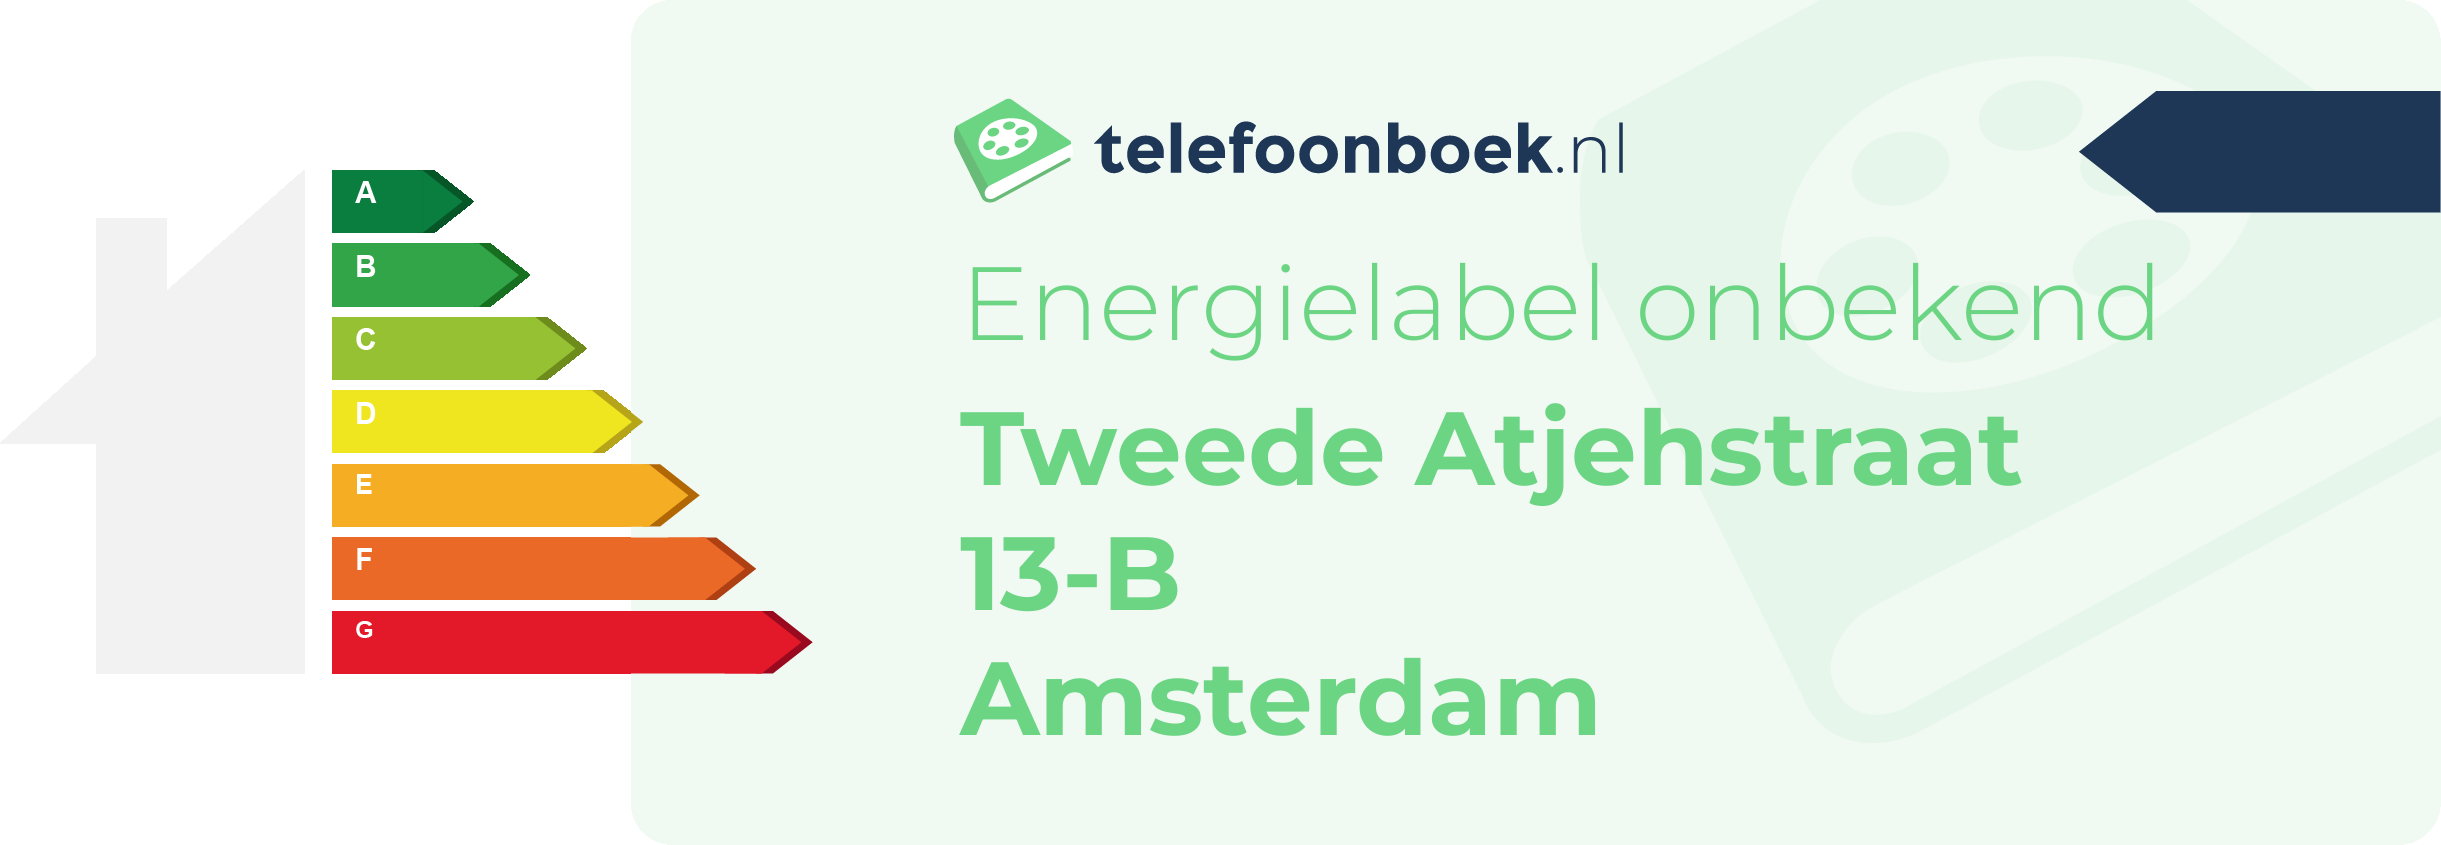 Energielabel Tweede Atjehstraat 13-B Amsterdam